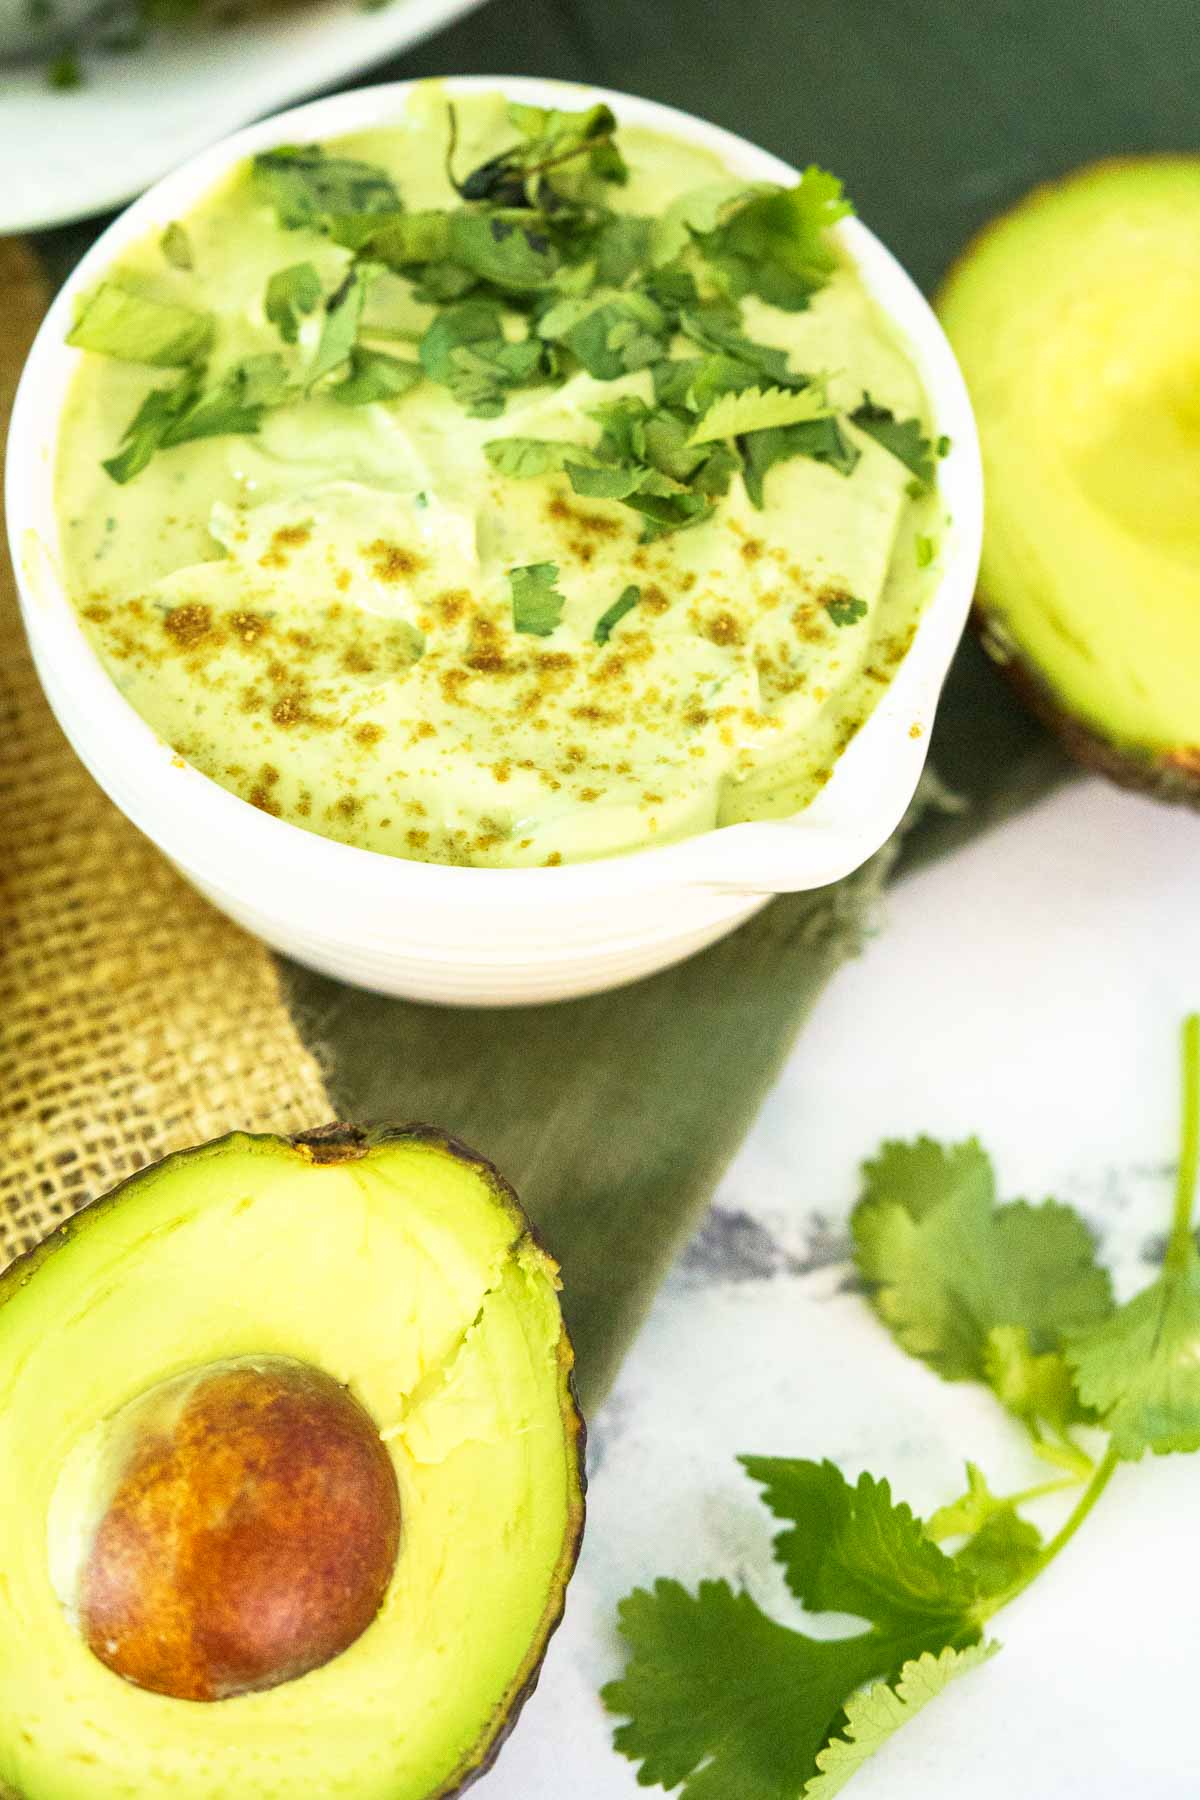 avocado crema in bowl with cilantro garnish